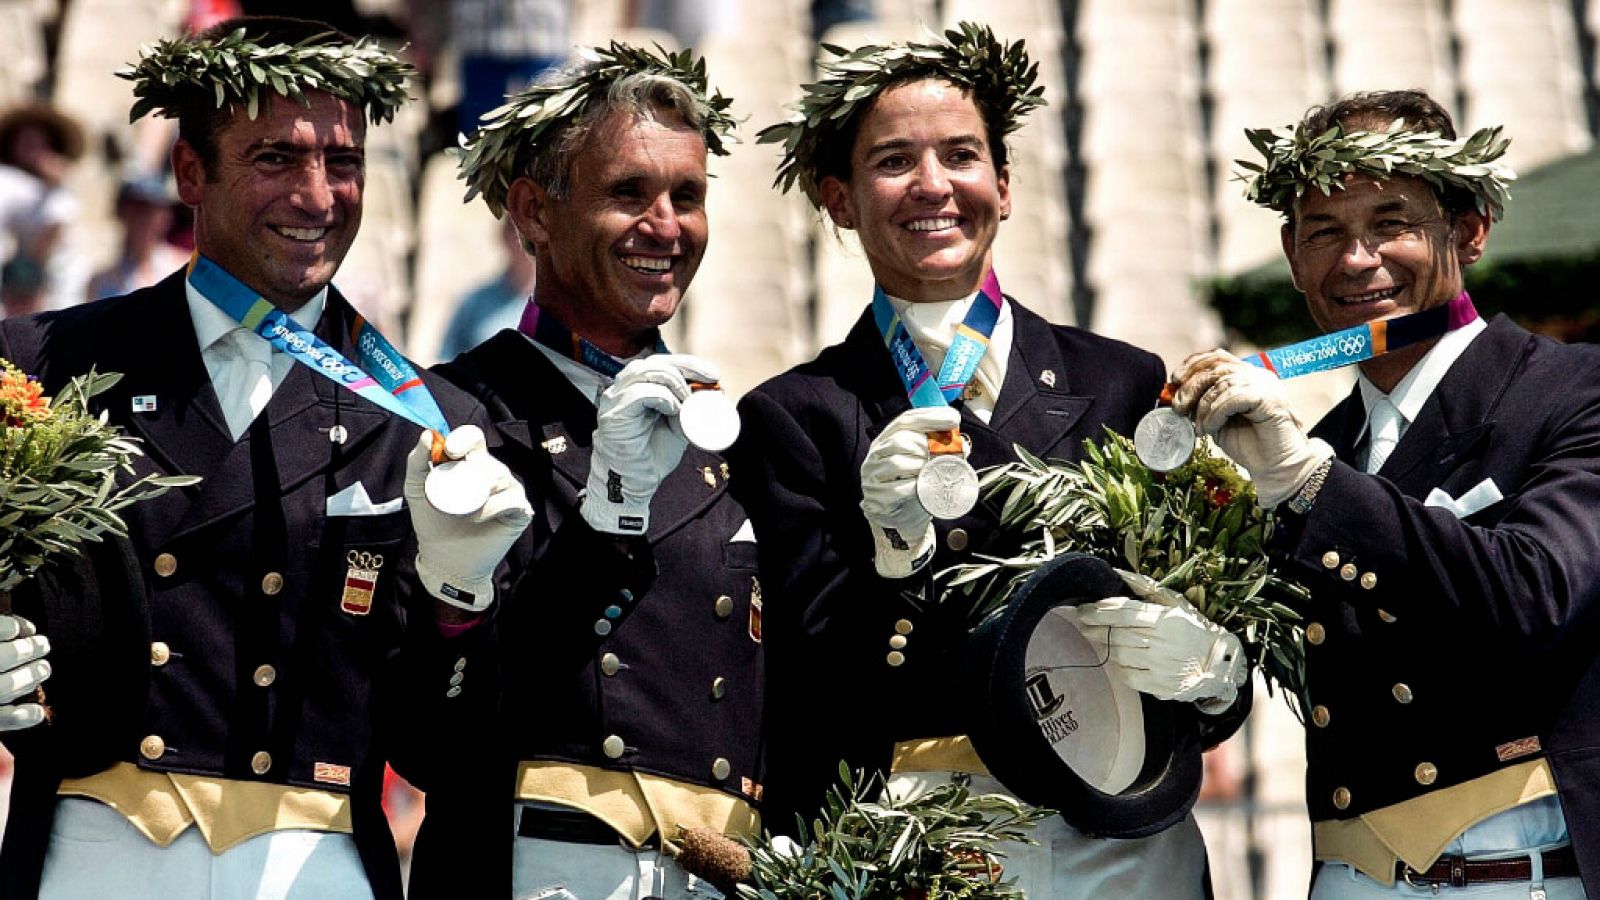 El equipo español de doma gana la medalla de plata en los Juegos Olímpicos de Atenas 2004